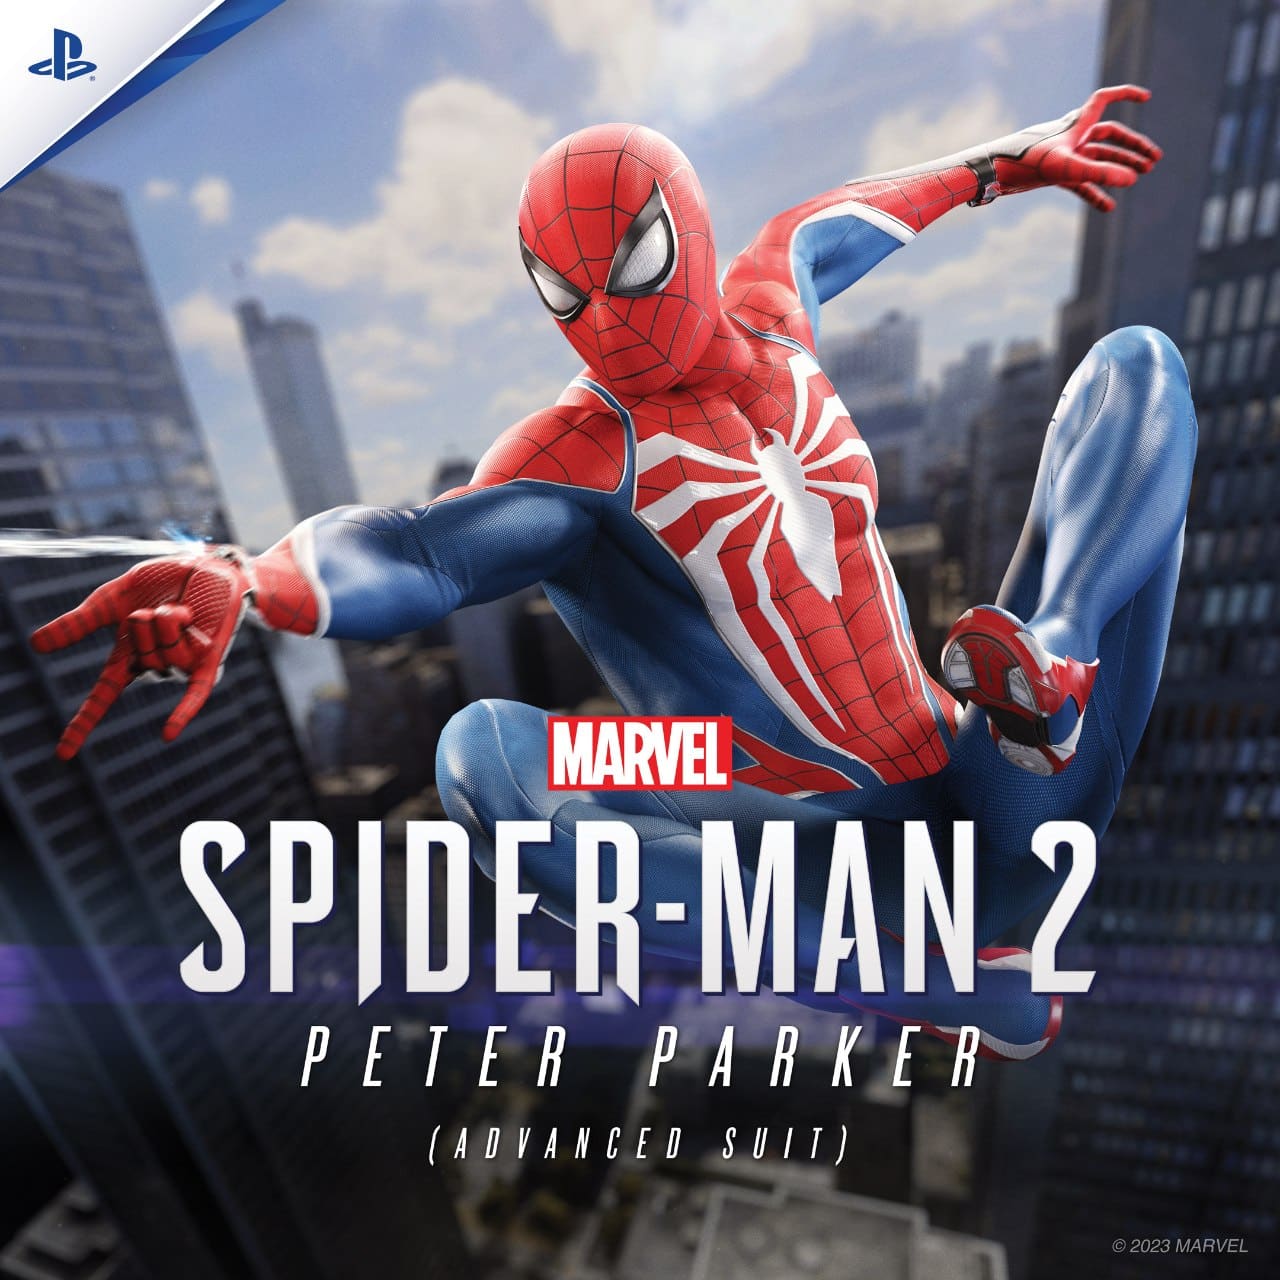 Spider-Man PS4 Edição Jogo do Ano: O que vem de diferente da versão normal?  Unboxing!